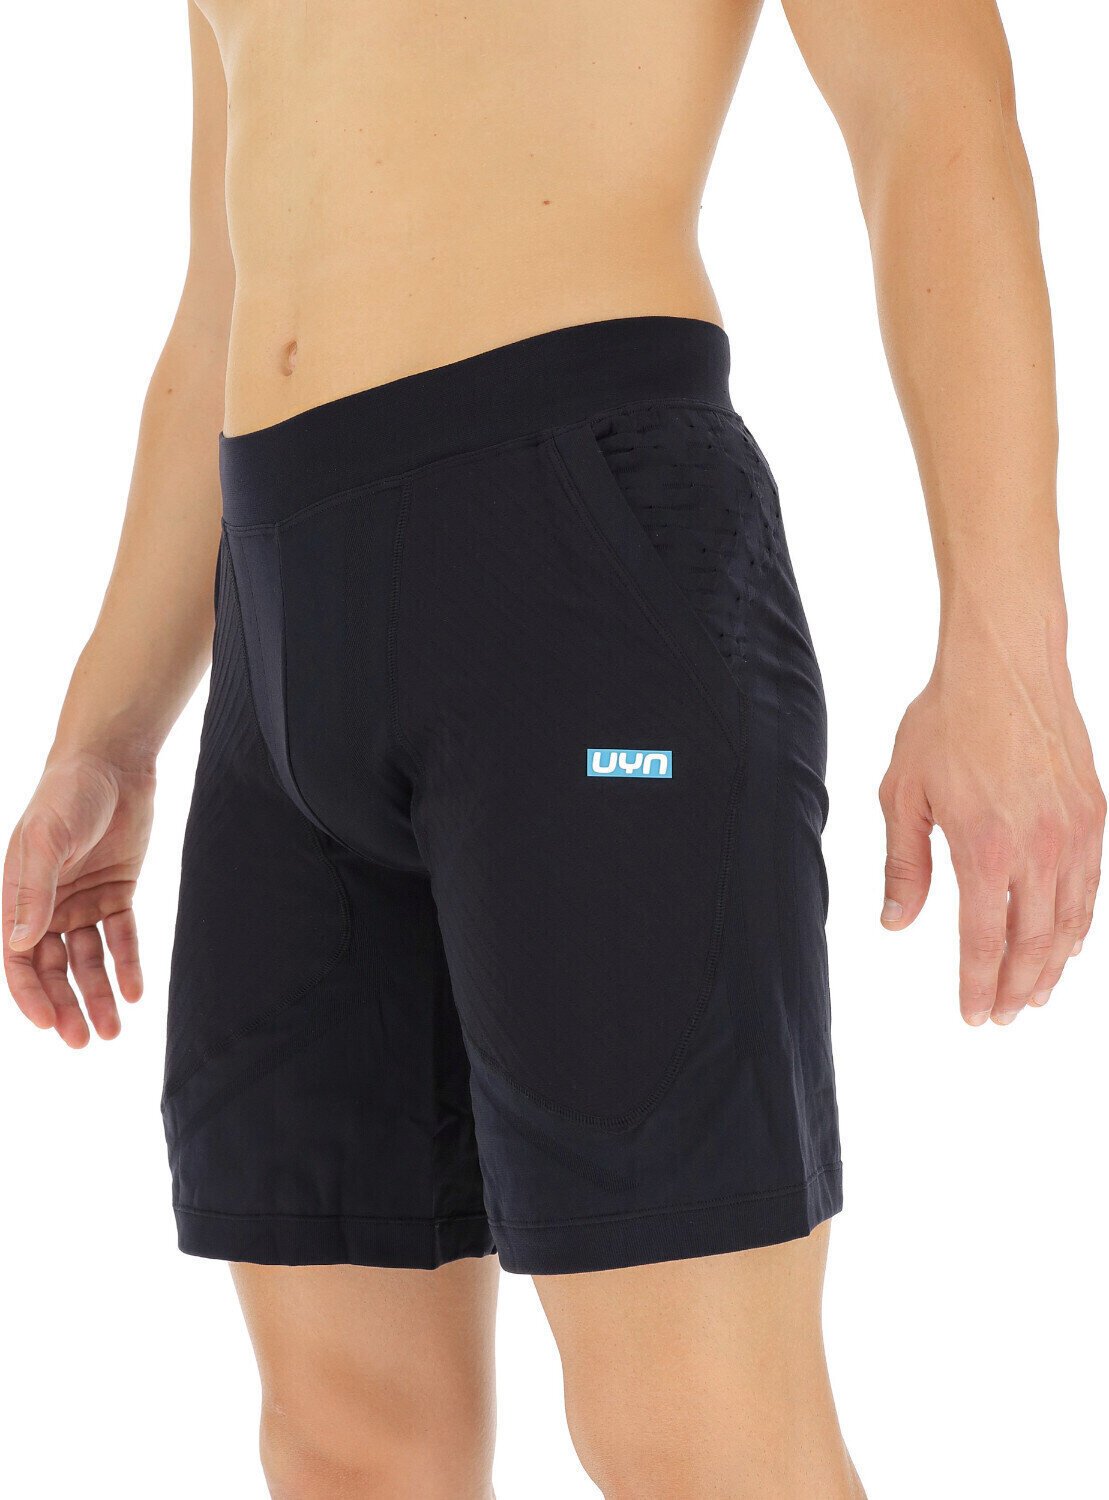 Running shorts UYN Run Fit Pant Short Blackboard XL Running shorts